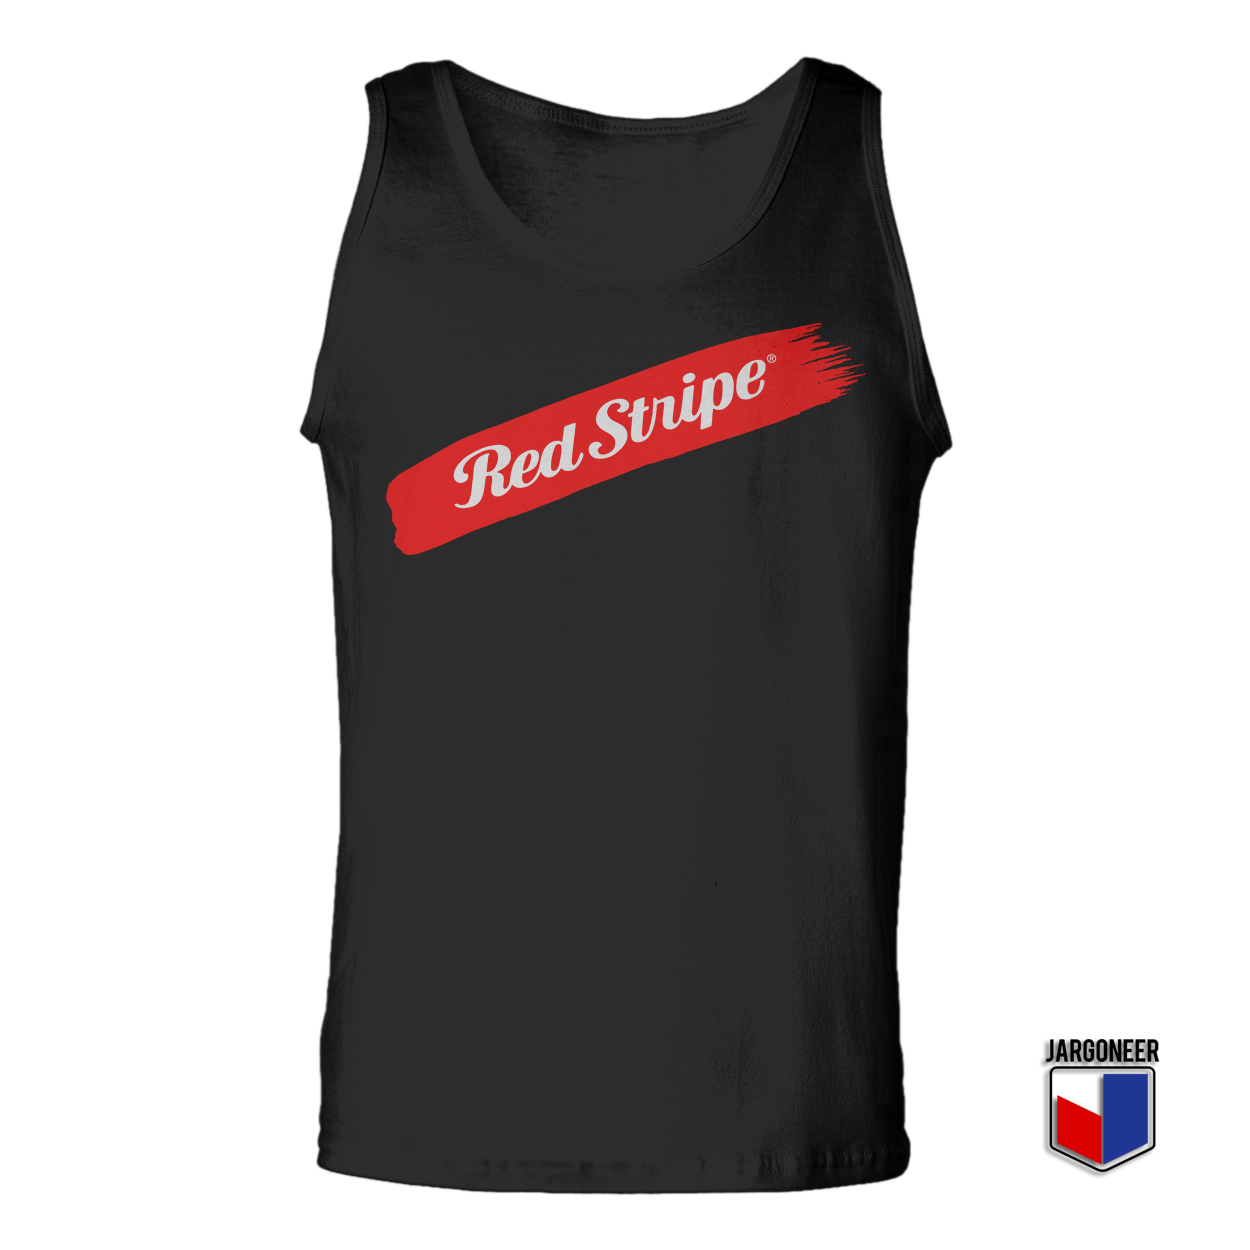 Red Stripe Swash Black Tank Top - Shop Unique Graphic Cool Shirt Designs